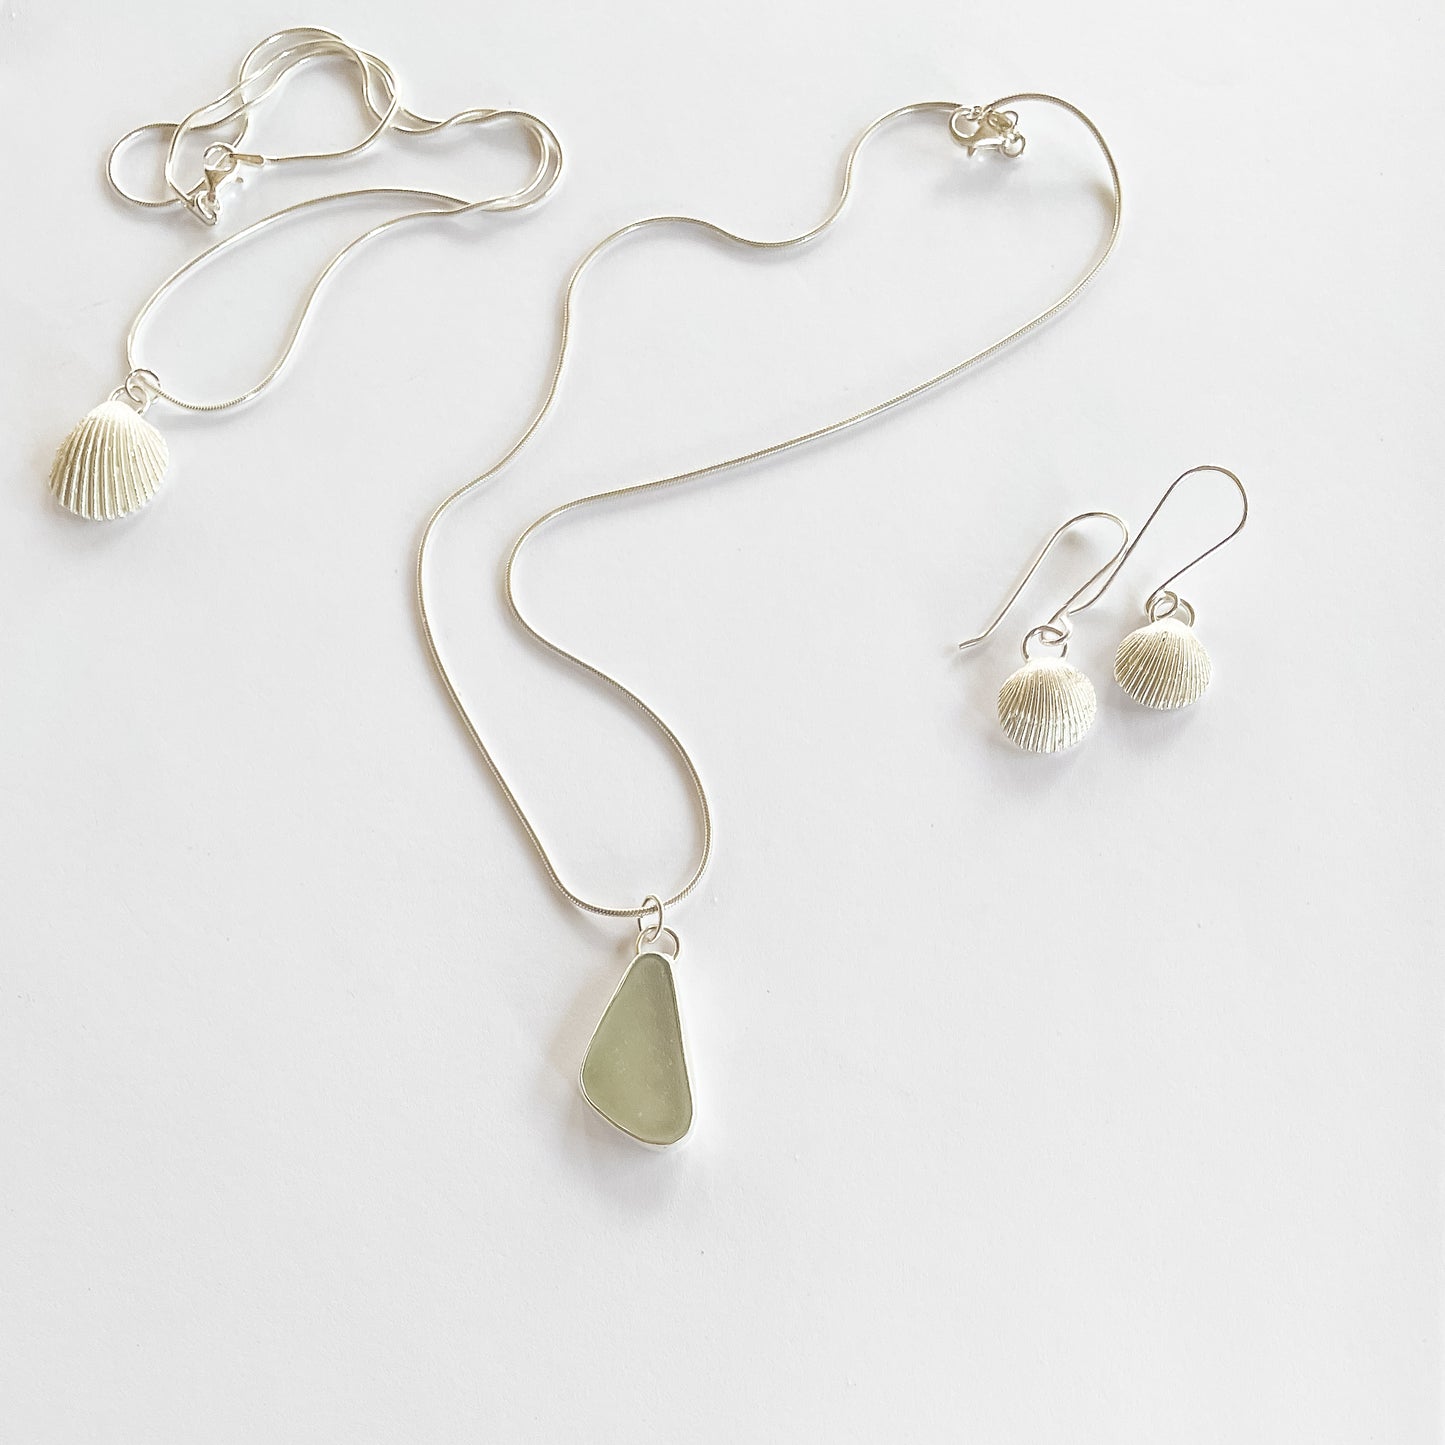 Livi Sea Shell earrings